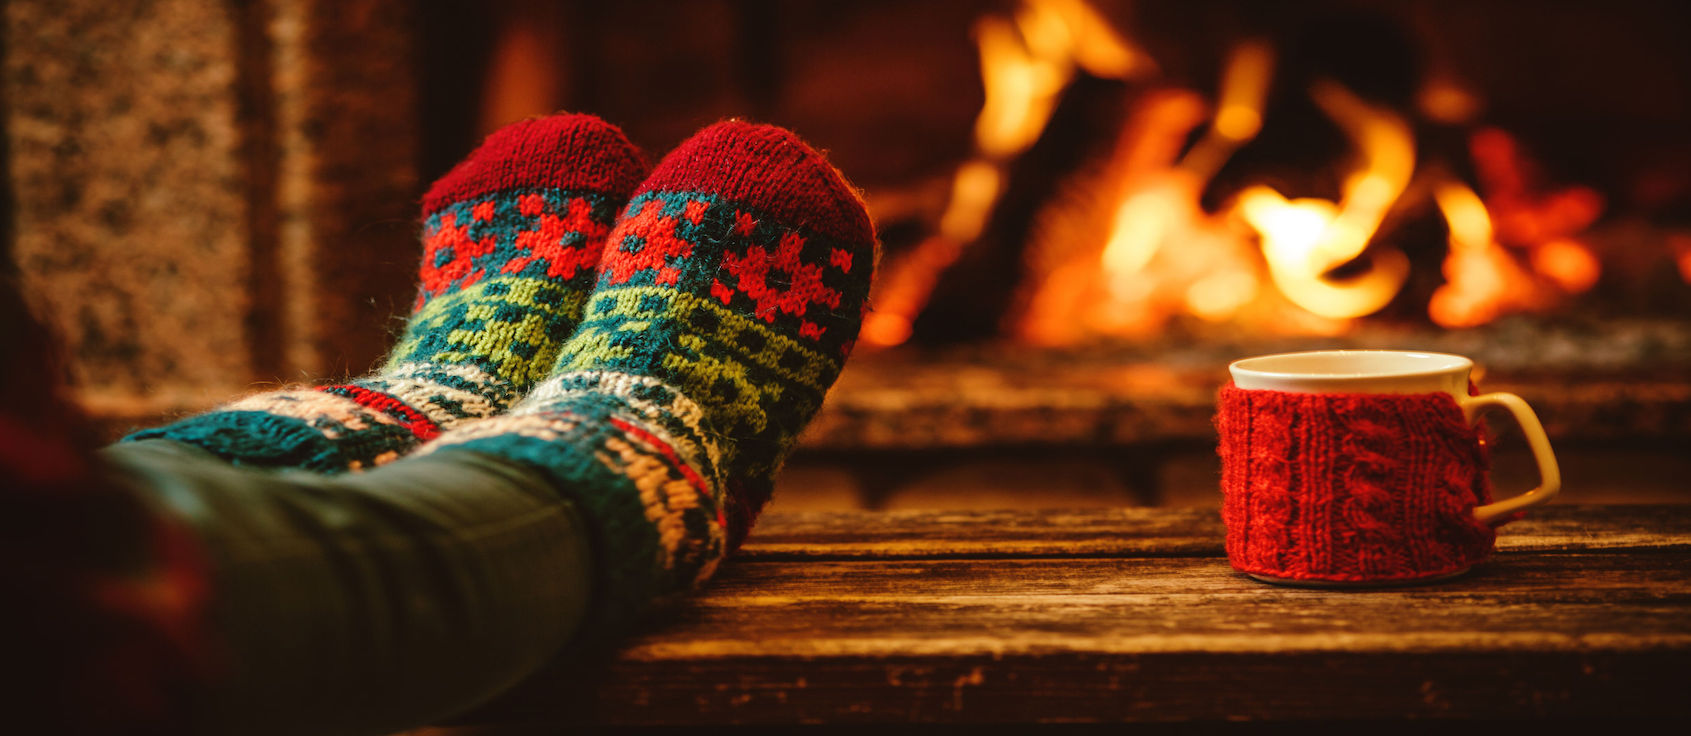 Feet in woollen socks by the fireplace.